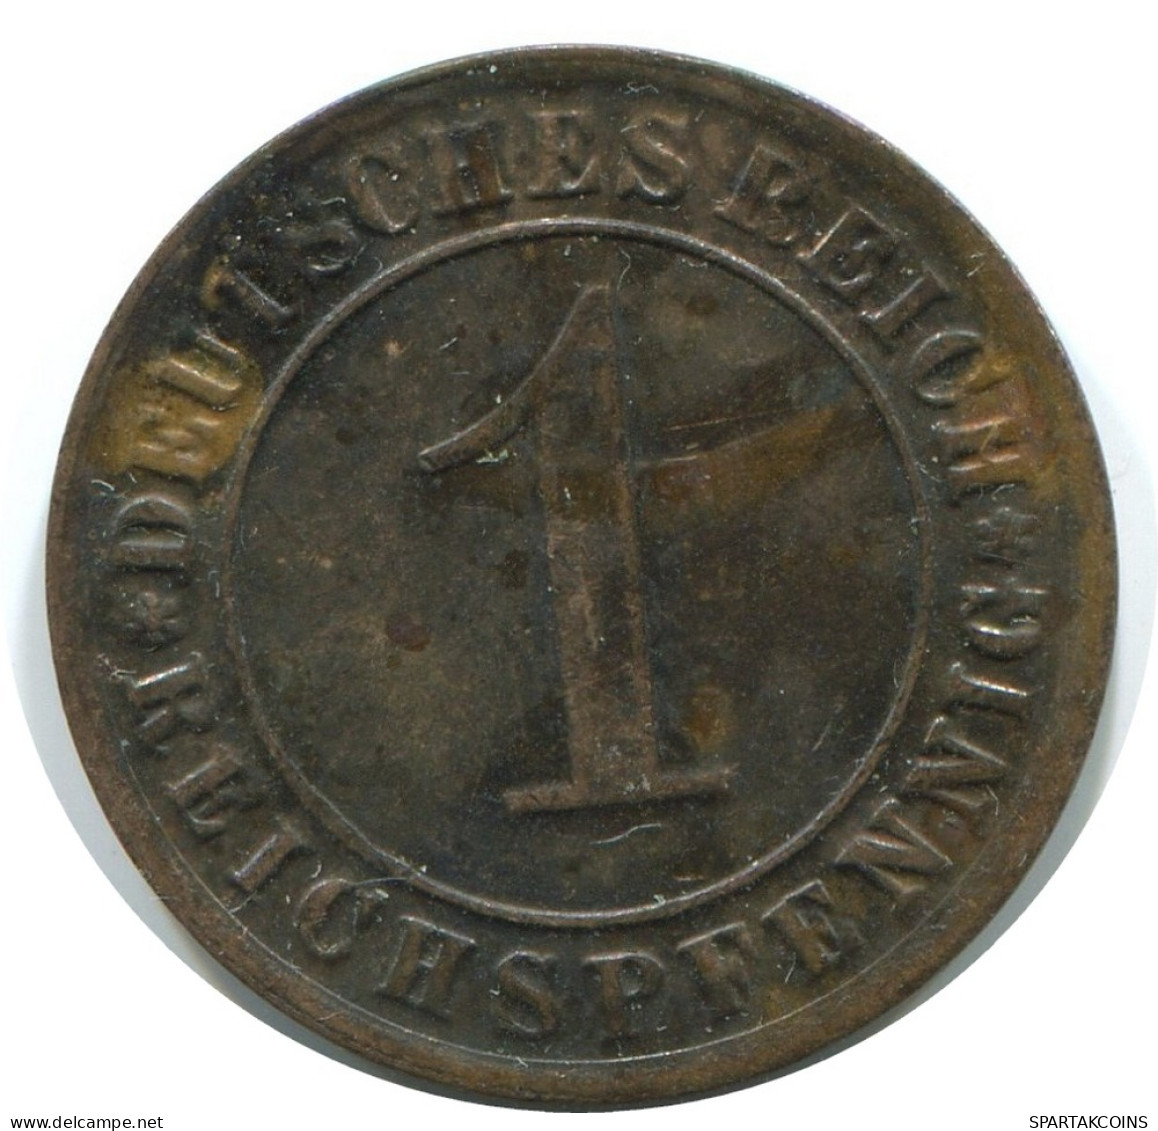 1 REICHSPFENNIG 1931 G GERMANY Coin #AE221.U - 1 Rentenpfennig & 1 Reichspfennig